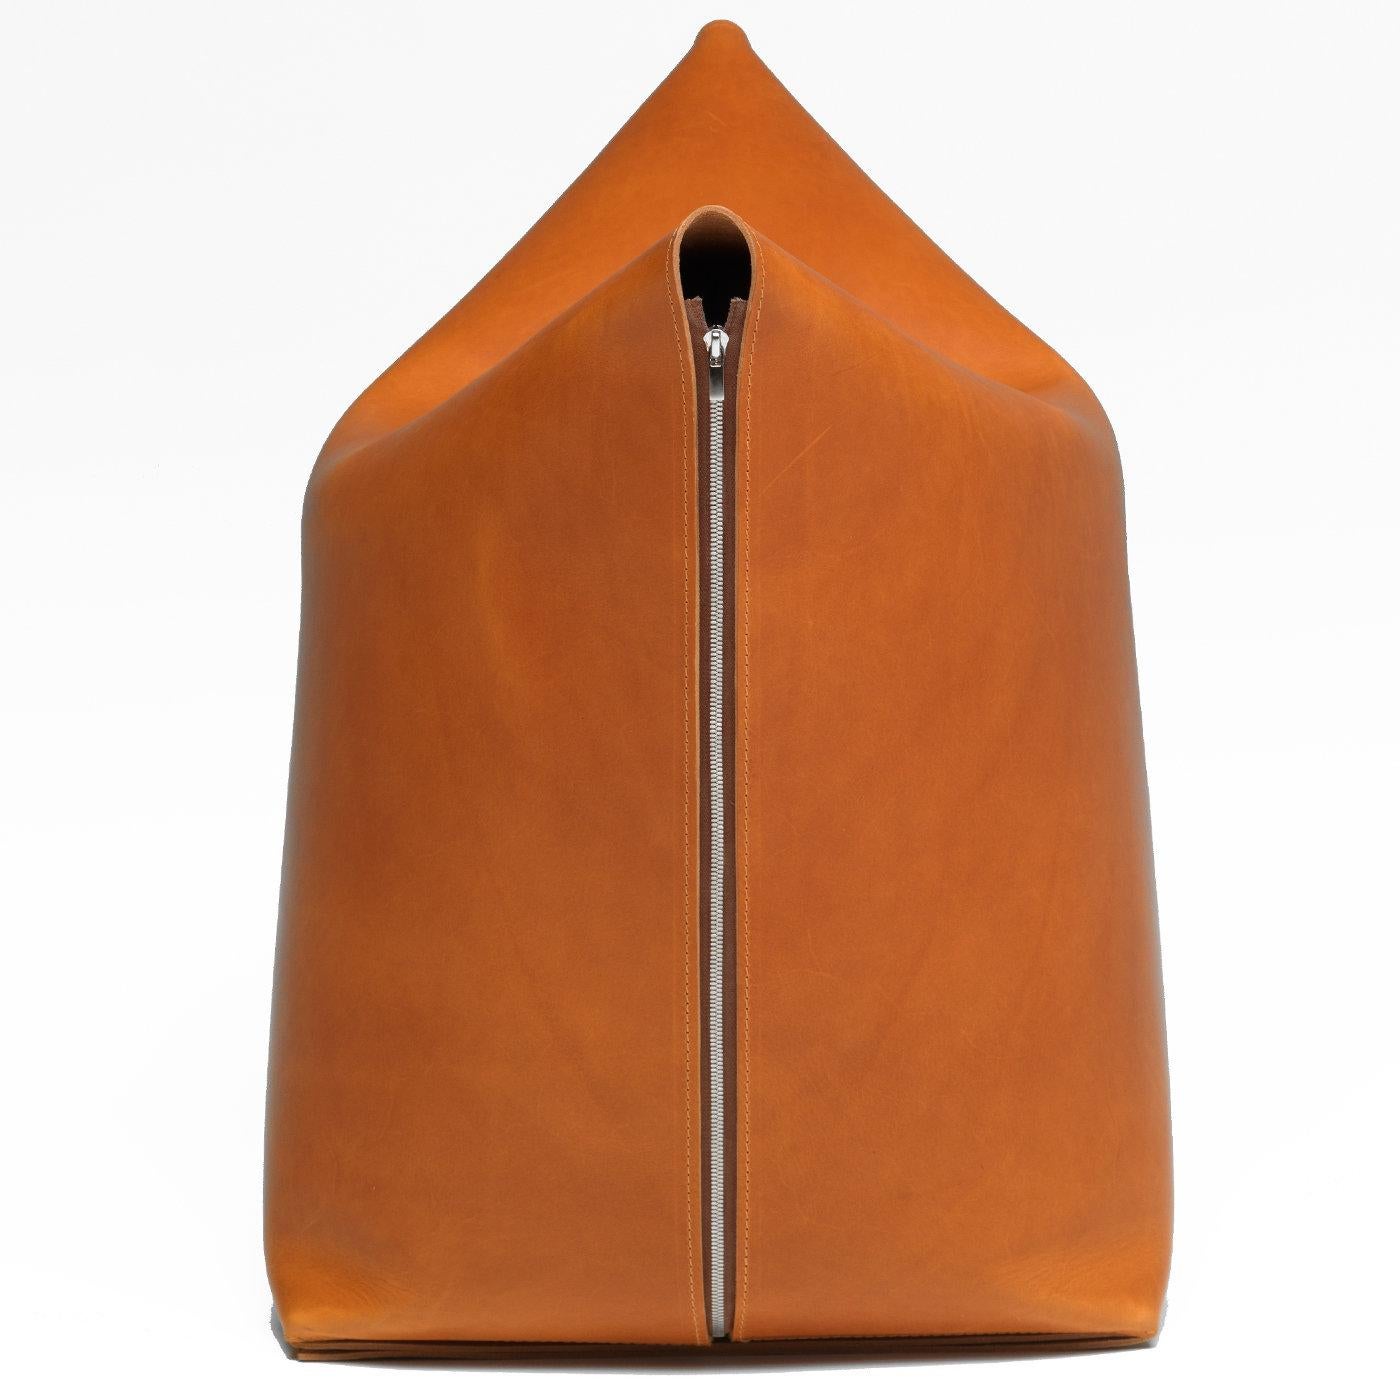 Dieser raffinierte Sitzsack ist sorgfältig in ein einziges Stück orangefarbenes Leder eingewickelt, das in seinen Falten an Origami erinnert. Der Stuhl, der die Form eines Katzengesichts annimmt, ist ein sehr bequemer Sitzplatz.